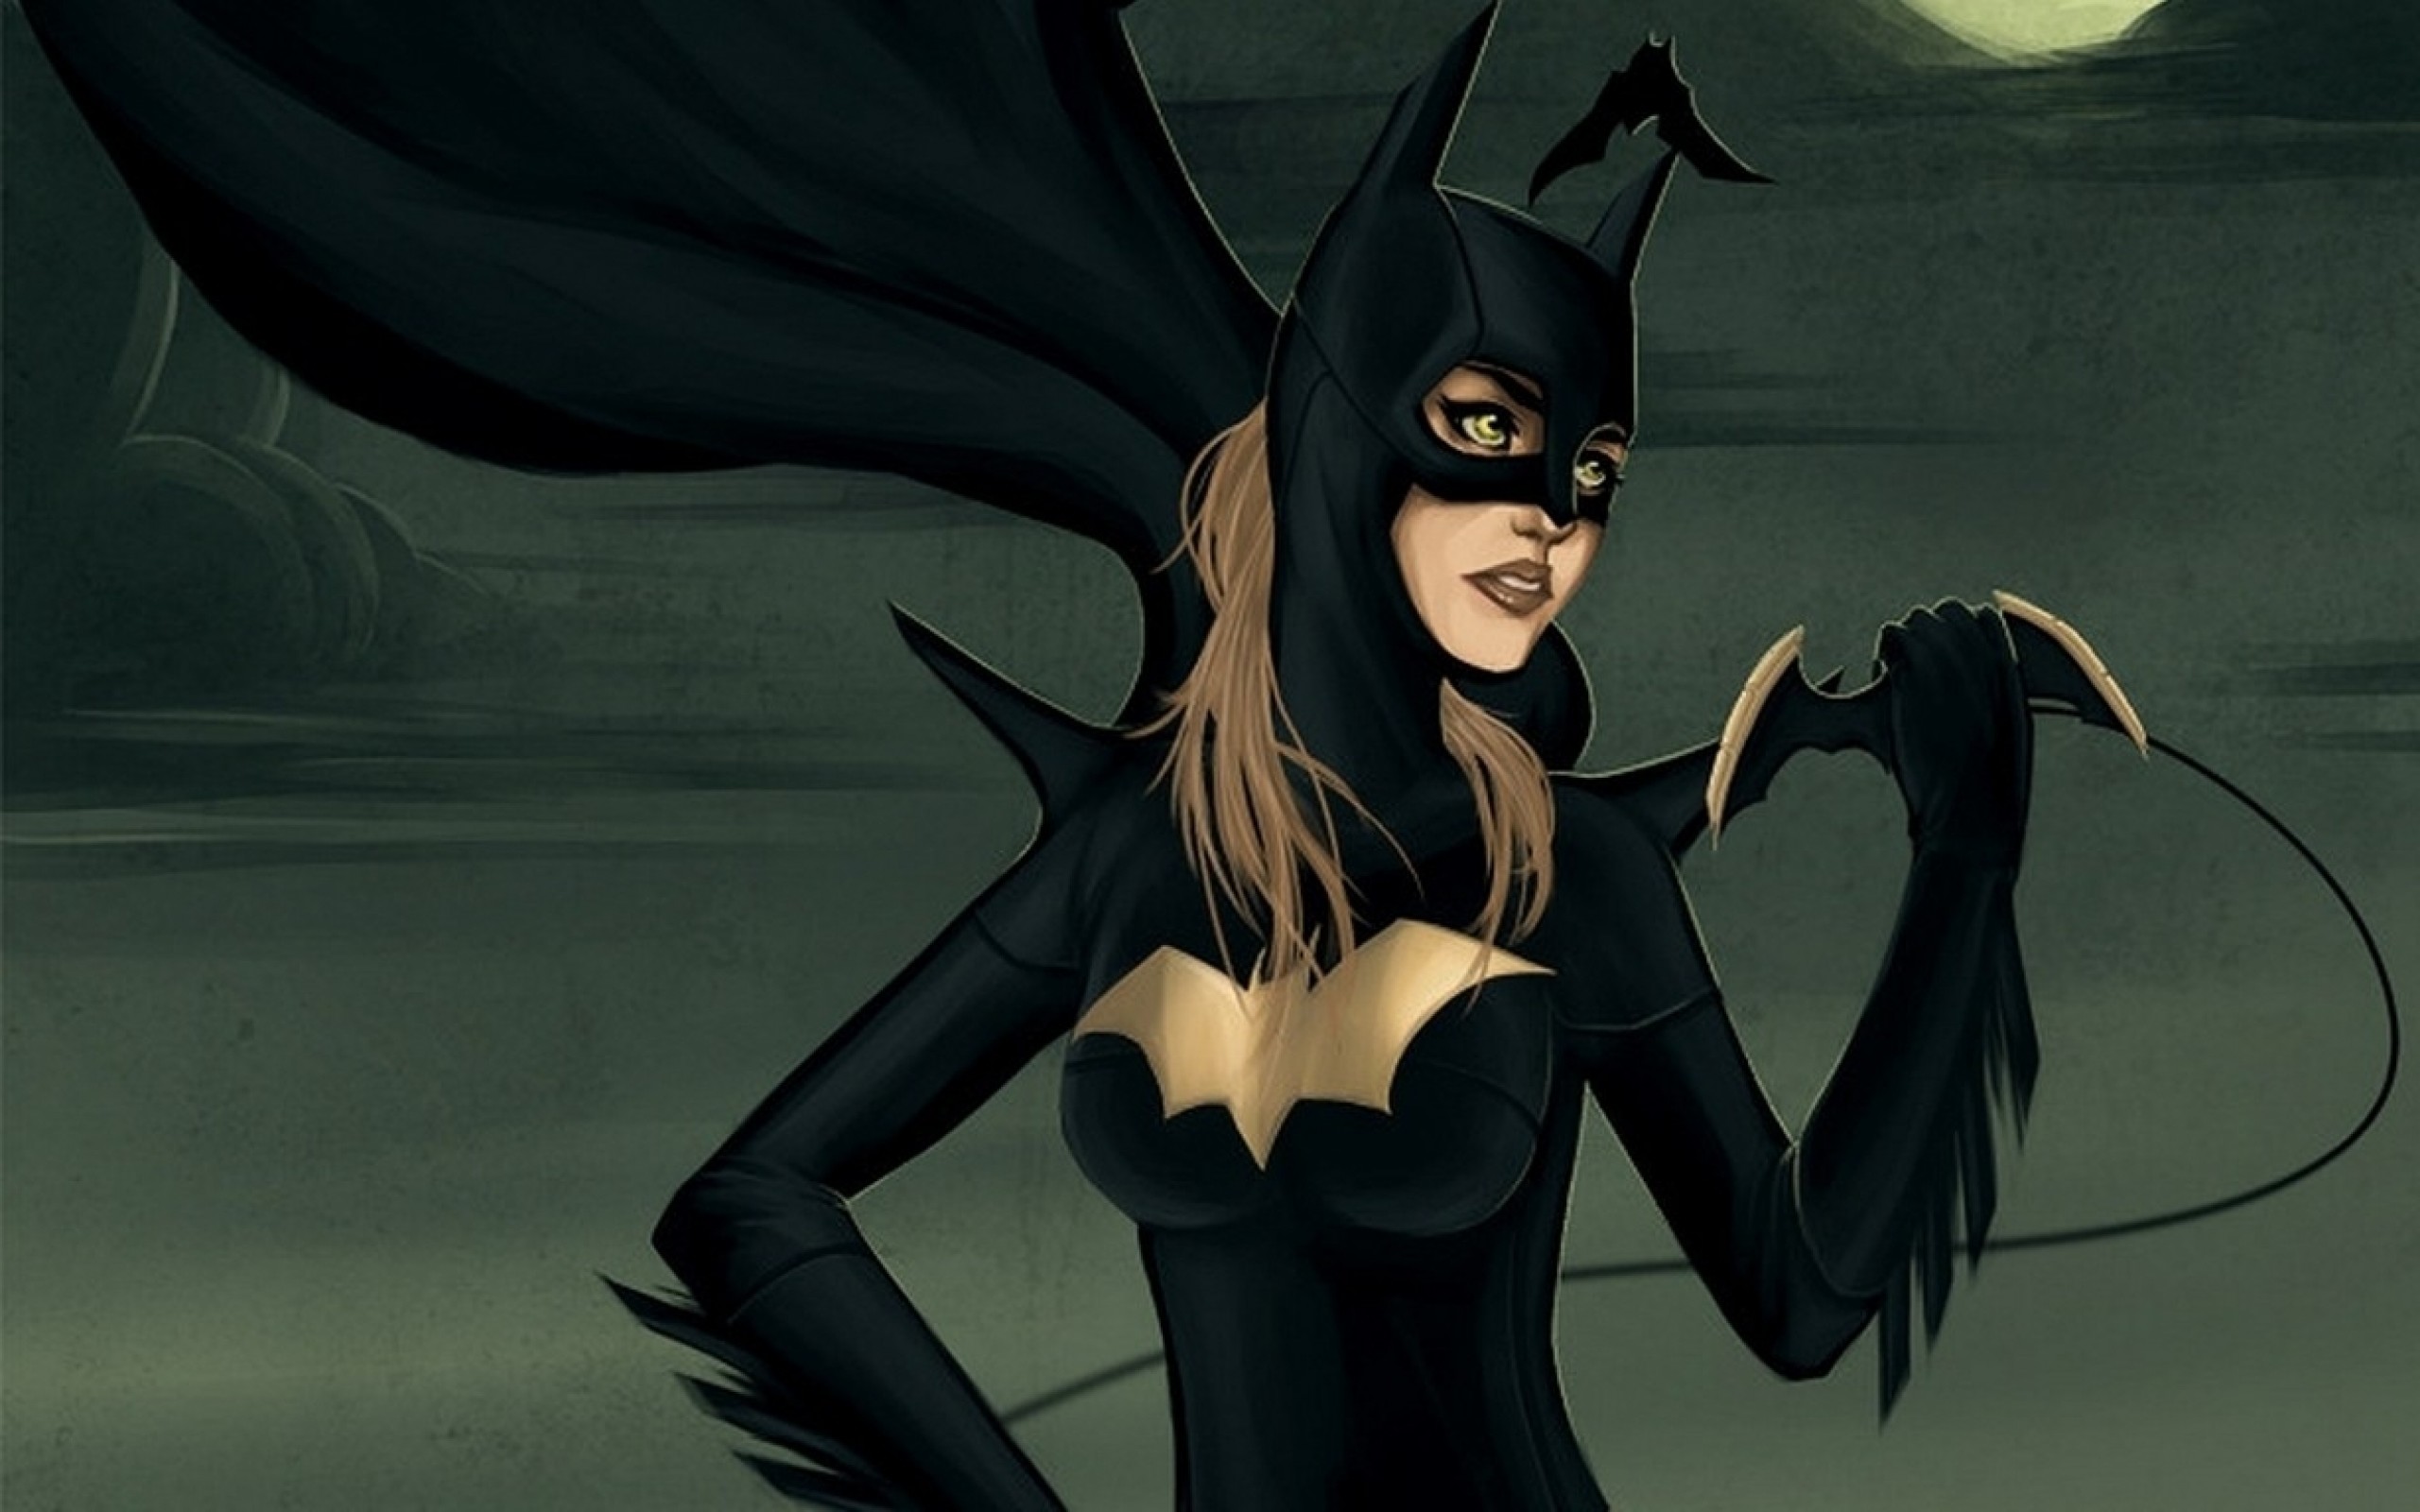 Batman batwoman. Бэтвумен и Бэтгерл. Бэтмен: тайна Бэтвумен, 2003 год. Бэтгерл летучая мышь. Мышь Бэтвумен.